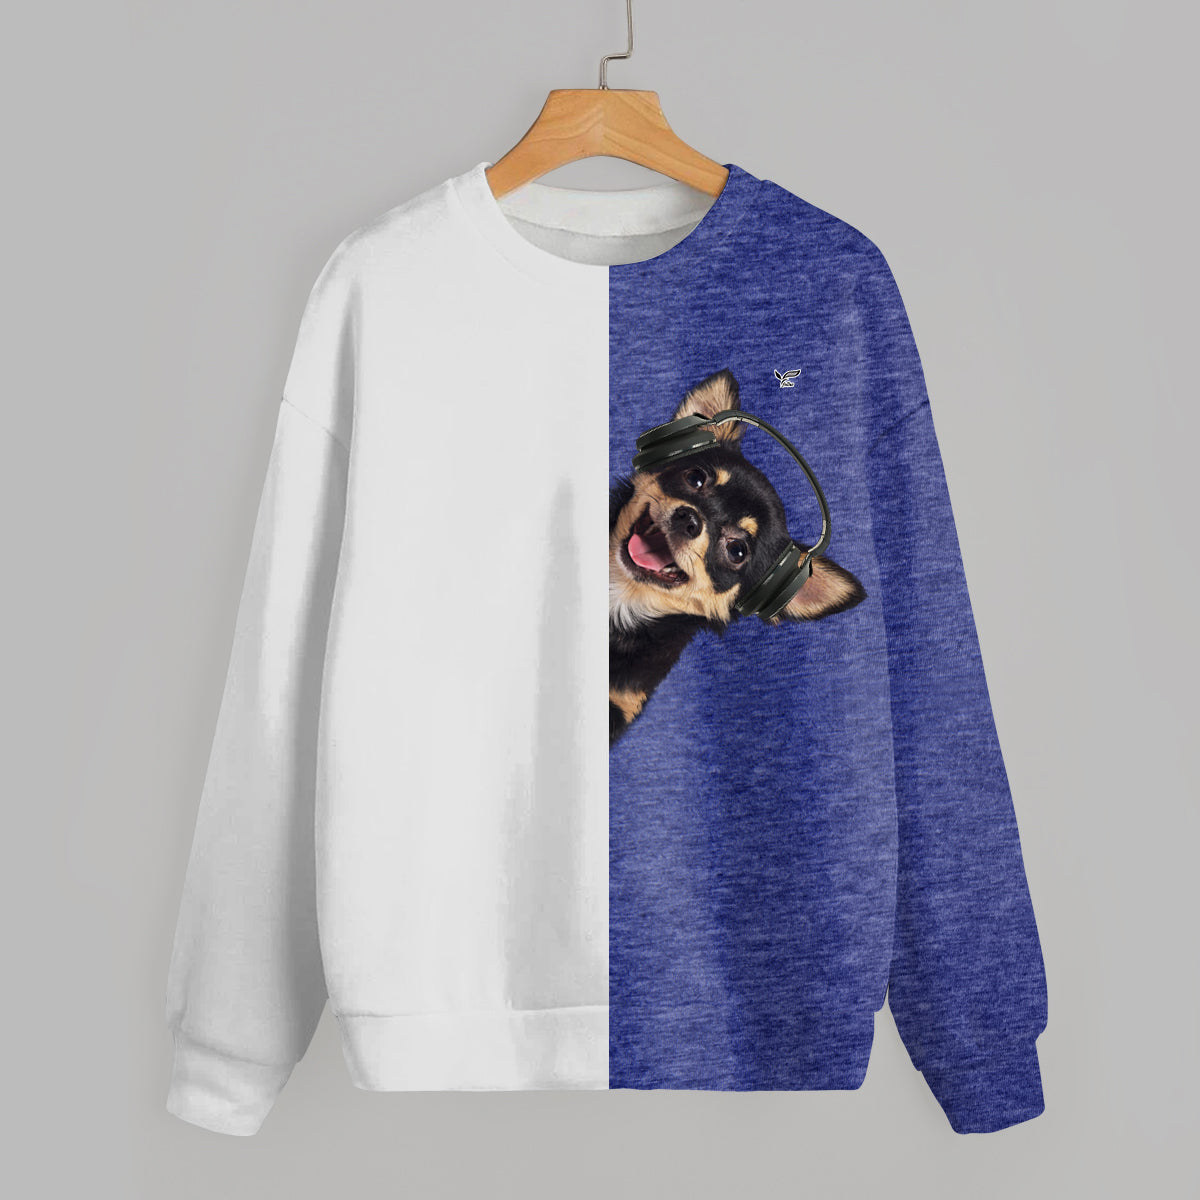 Funny Happy Time - Chihuahua Sweatshirt V6